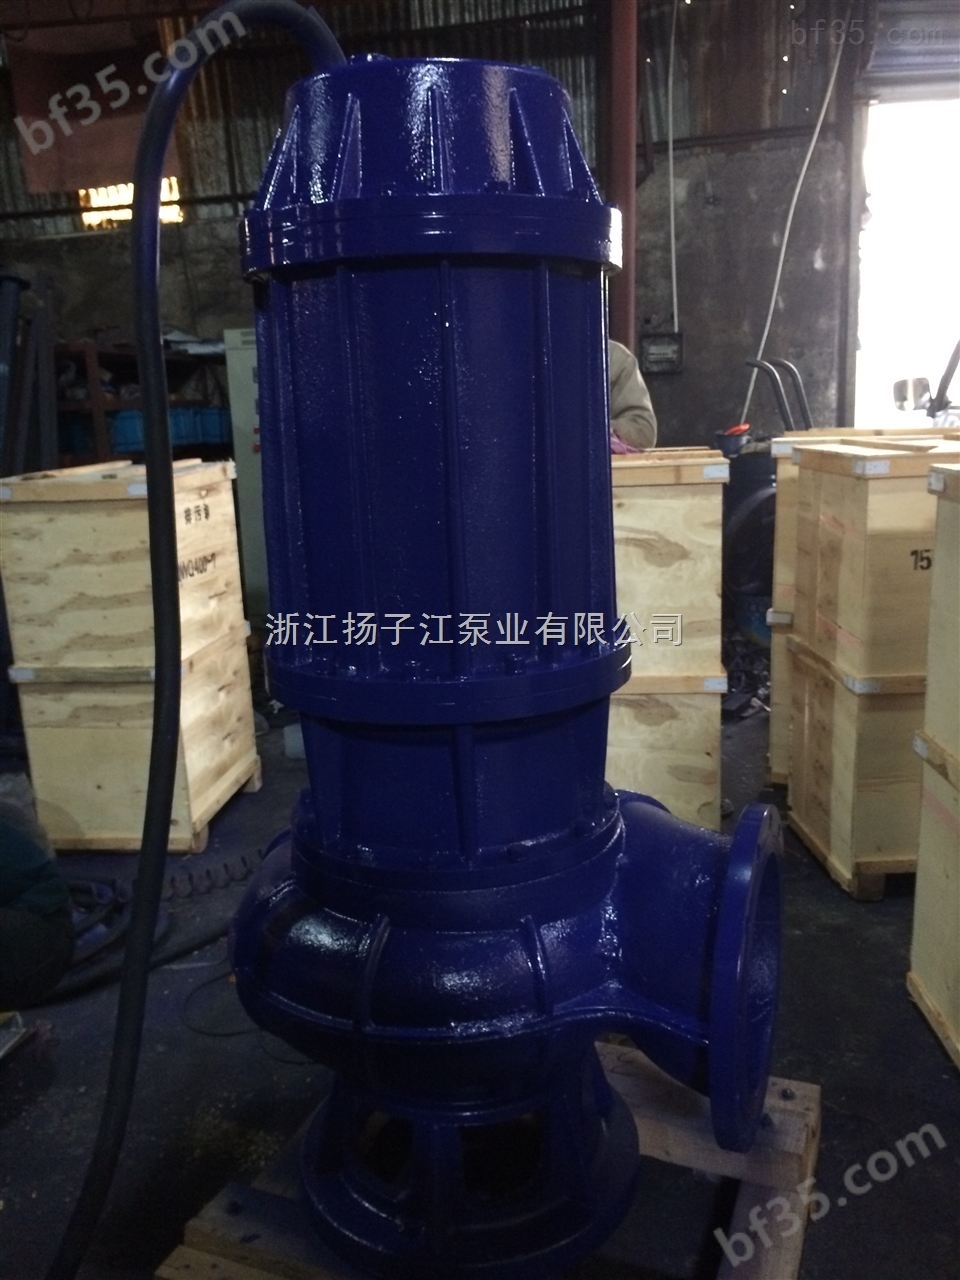 集水坑污水泵JYWQ80-40-15-1600-4自动搅匀排污泵污水泵